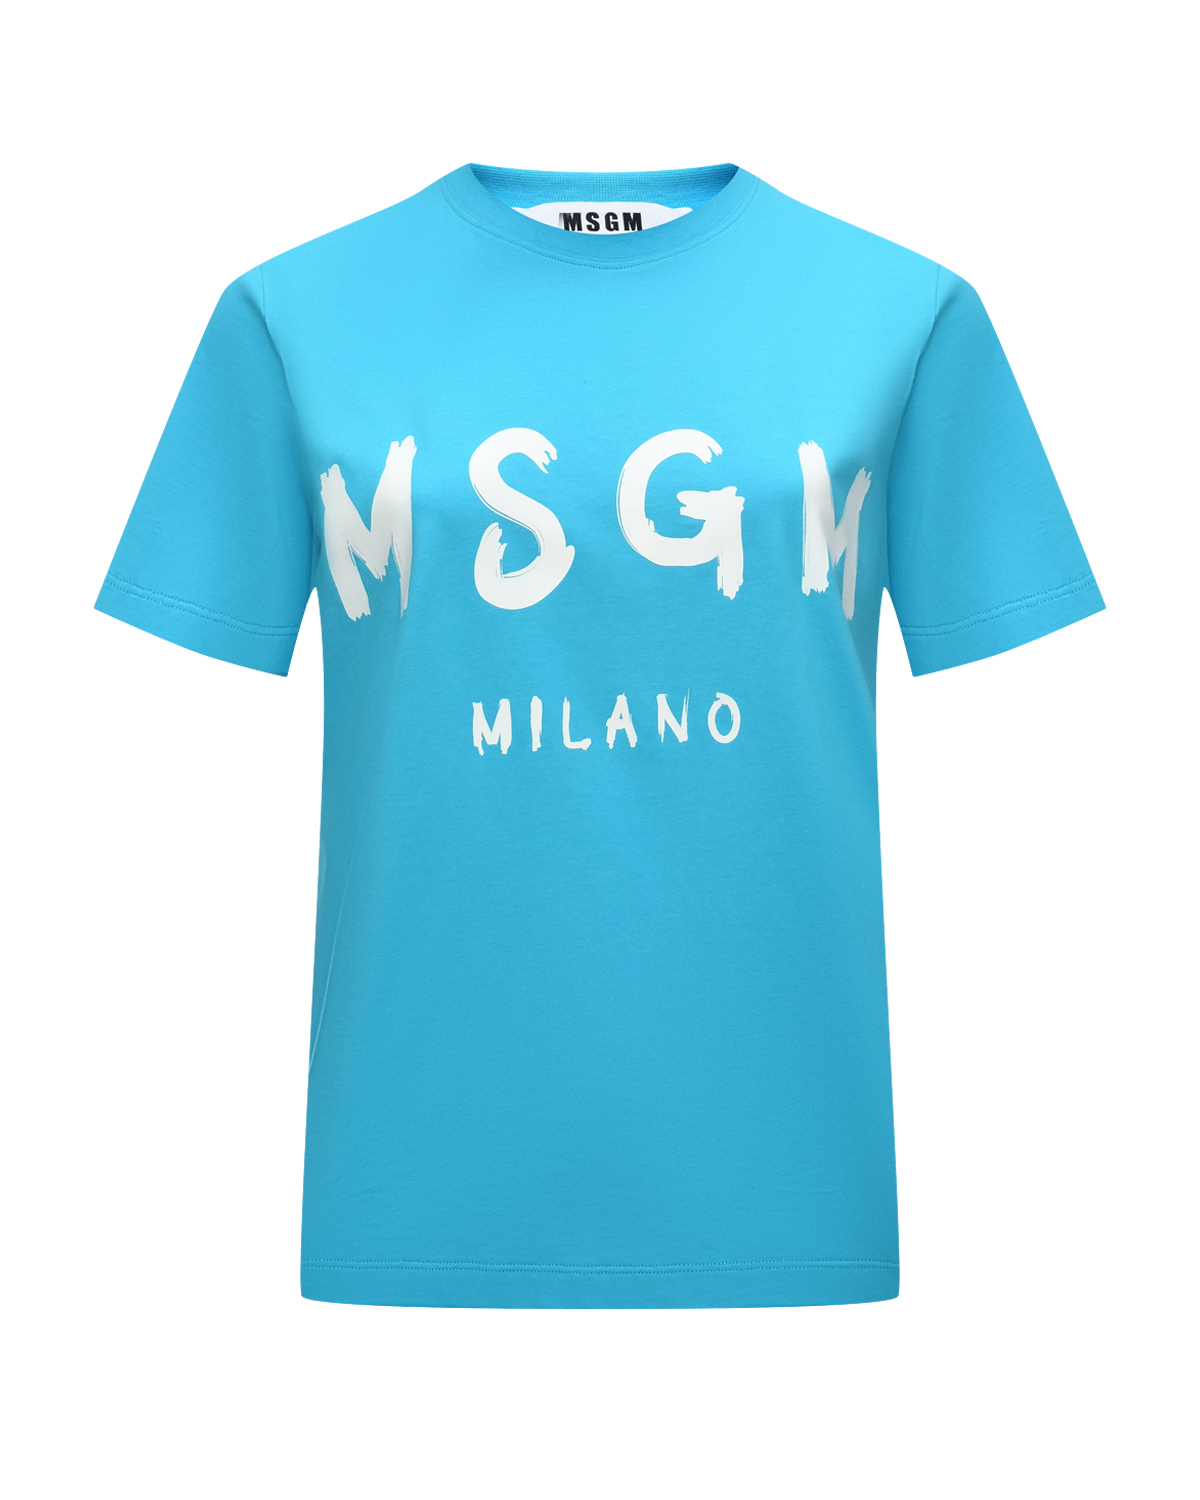 Футболка с крупным лого, голубая MSGM футболка msgm